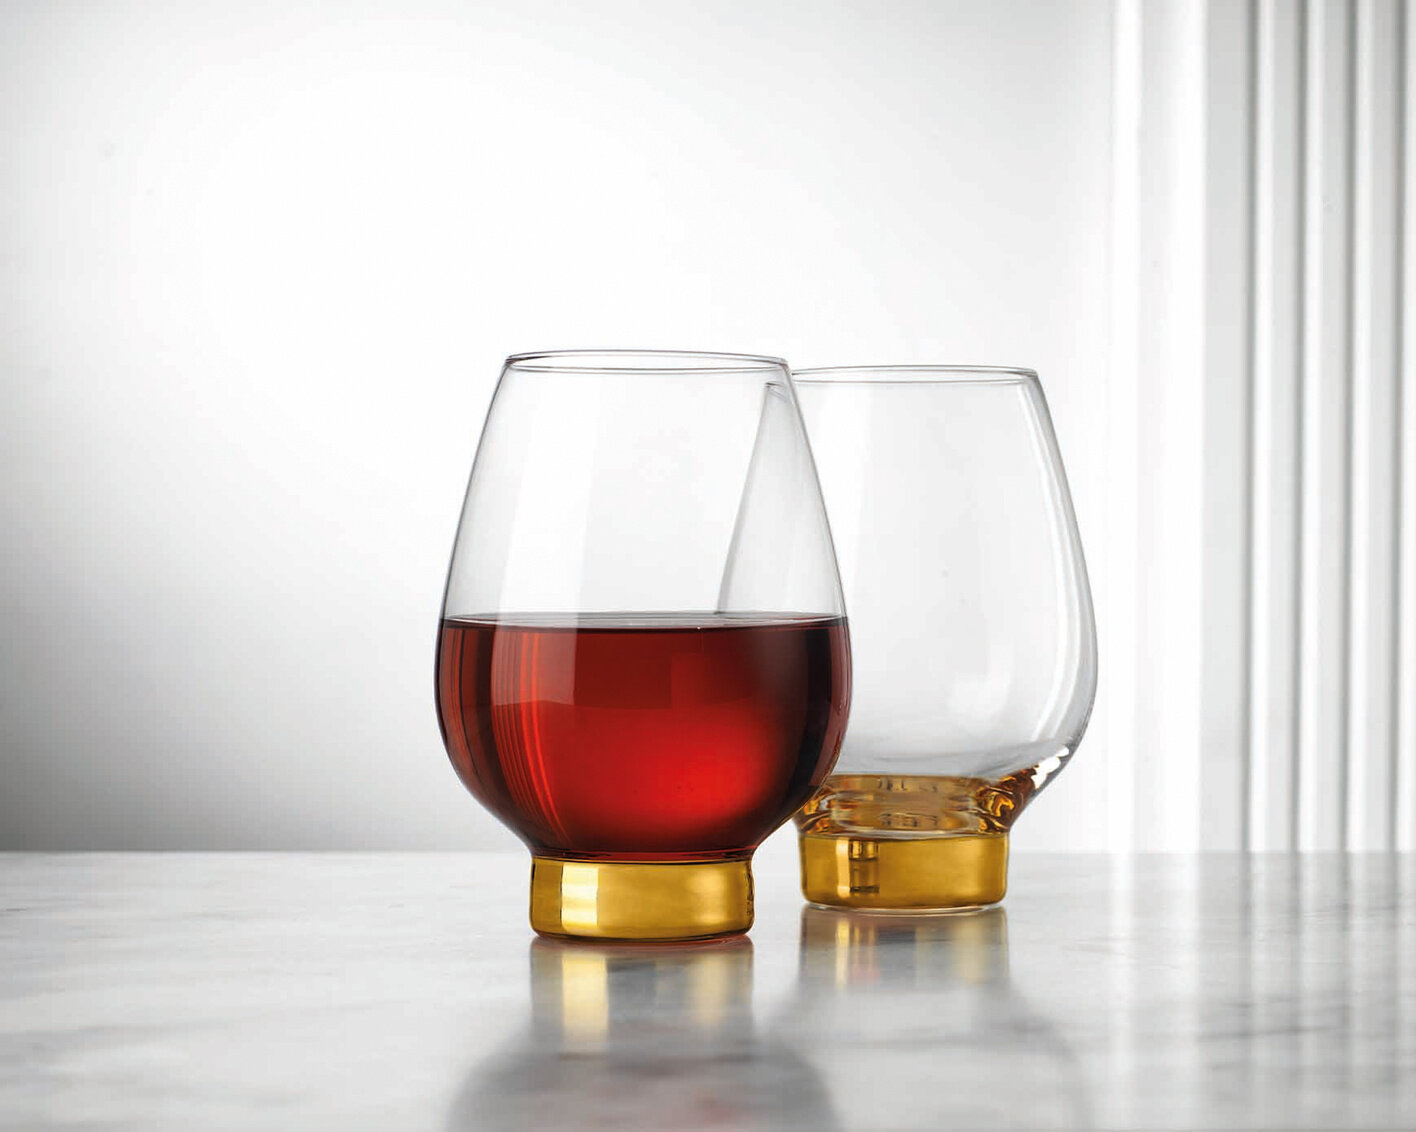 Godinger Stemless Wine Glasses - European Made, Set of 4 - 17oz Drinking  Glasses for Red Wine